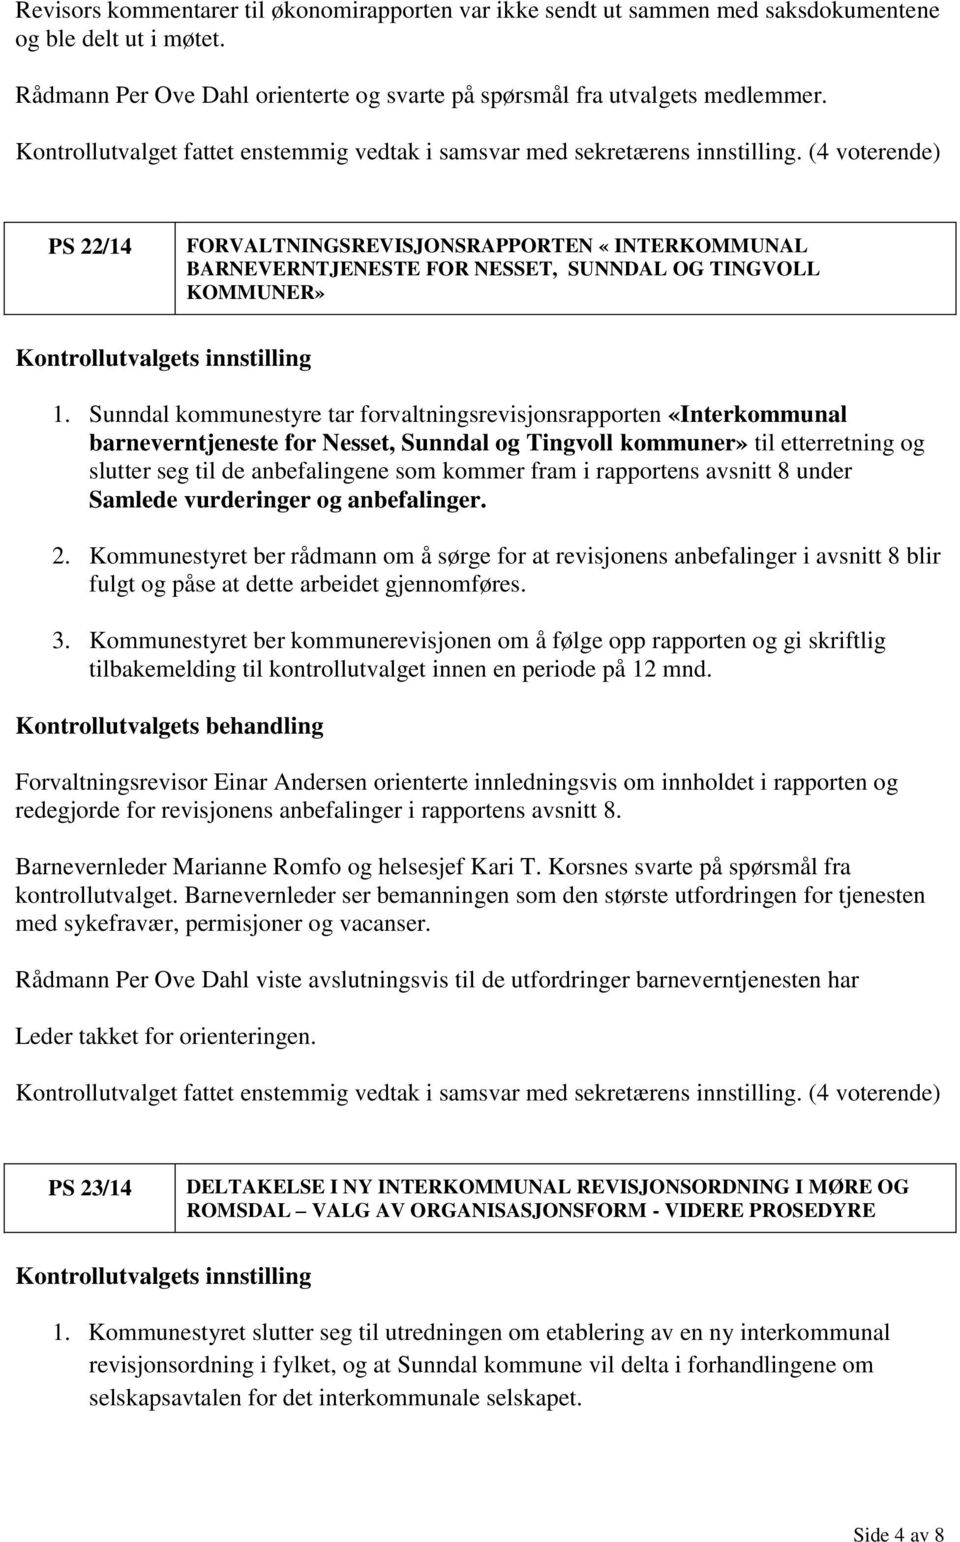 Sunndal kommunestyre tar forvaltningsrevisjonsrapporten «Interkommunal barneverntjeneste for Nesset, Sunndal og Tingvoll kommuner» til etterretning og slutter seg til de anbefalingene som kommer fram